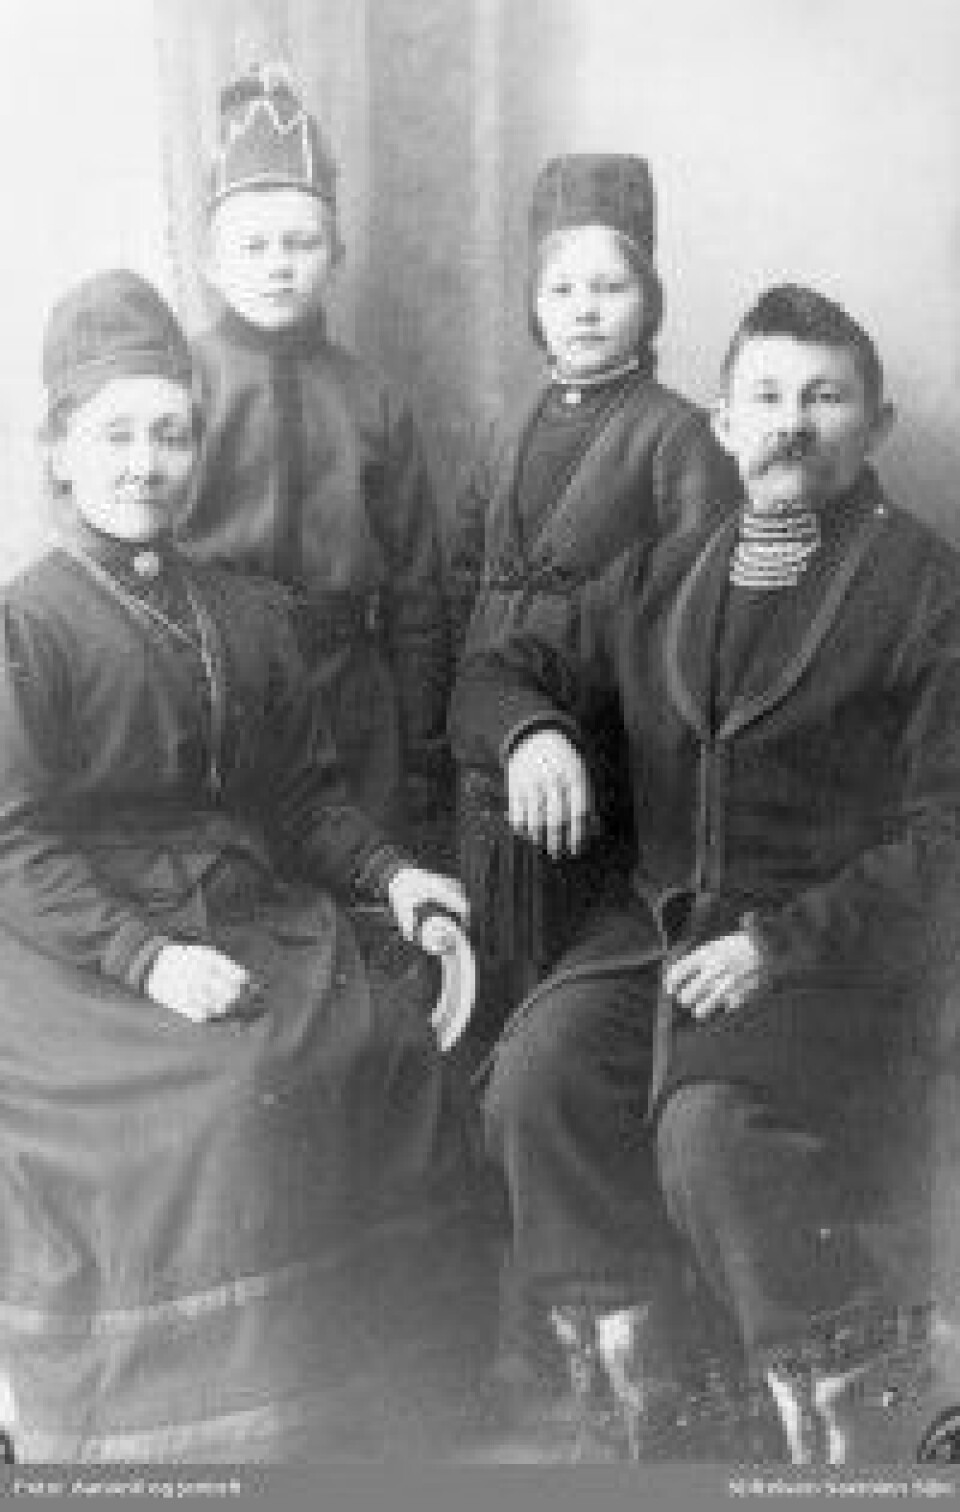 Sanna og Anton Jonassen med barna Bjarne og Sofie. De drev reindrift på Nord-Fosen. Sanna og Anton var kjente samepolitikere i Sør-Norge mellom 1905 og 1925. (Foto: Stiftelsen Saemien Sïjte/Aanonli og Jentoft)